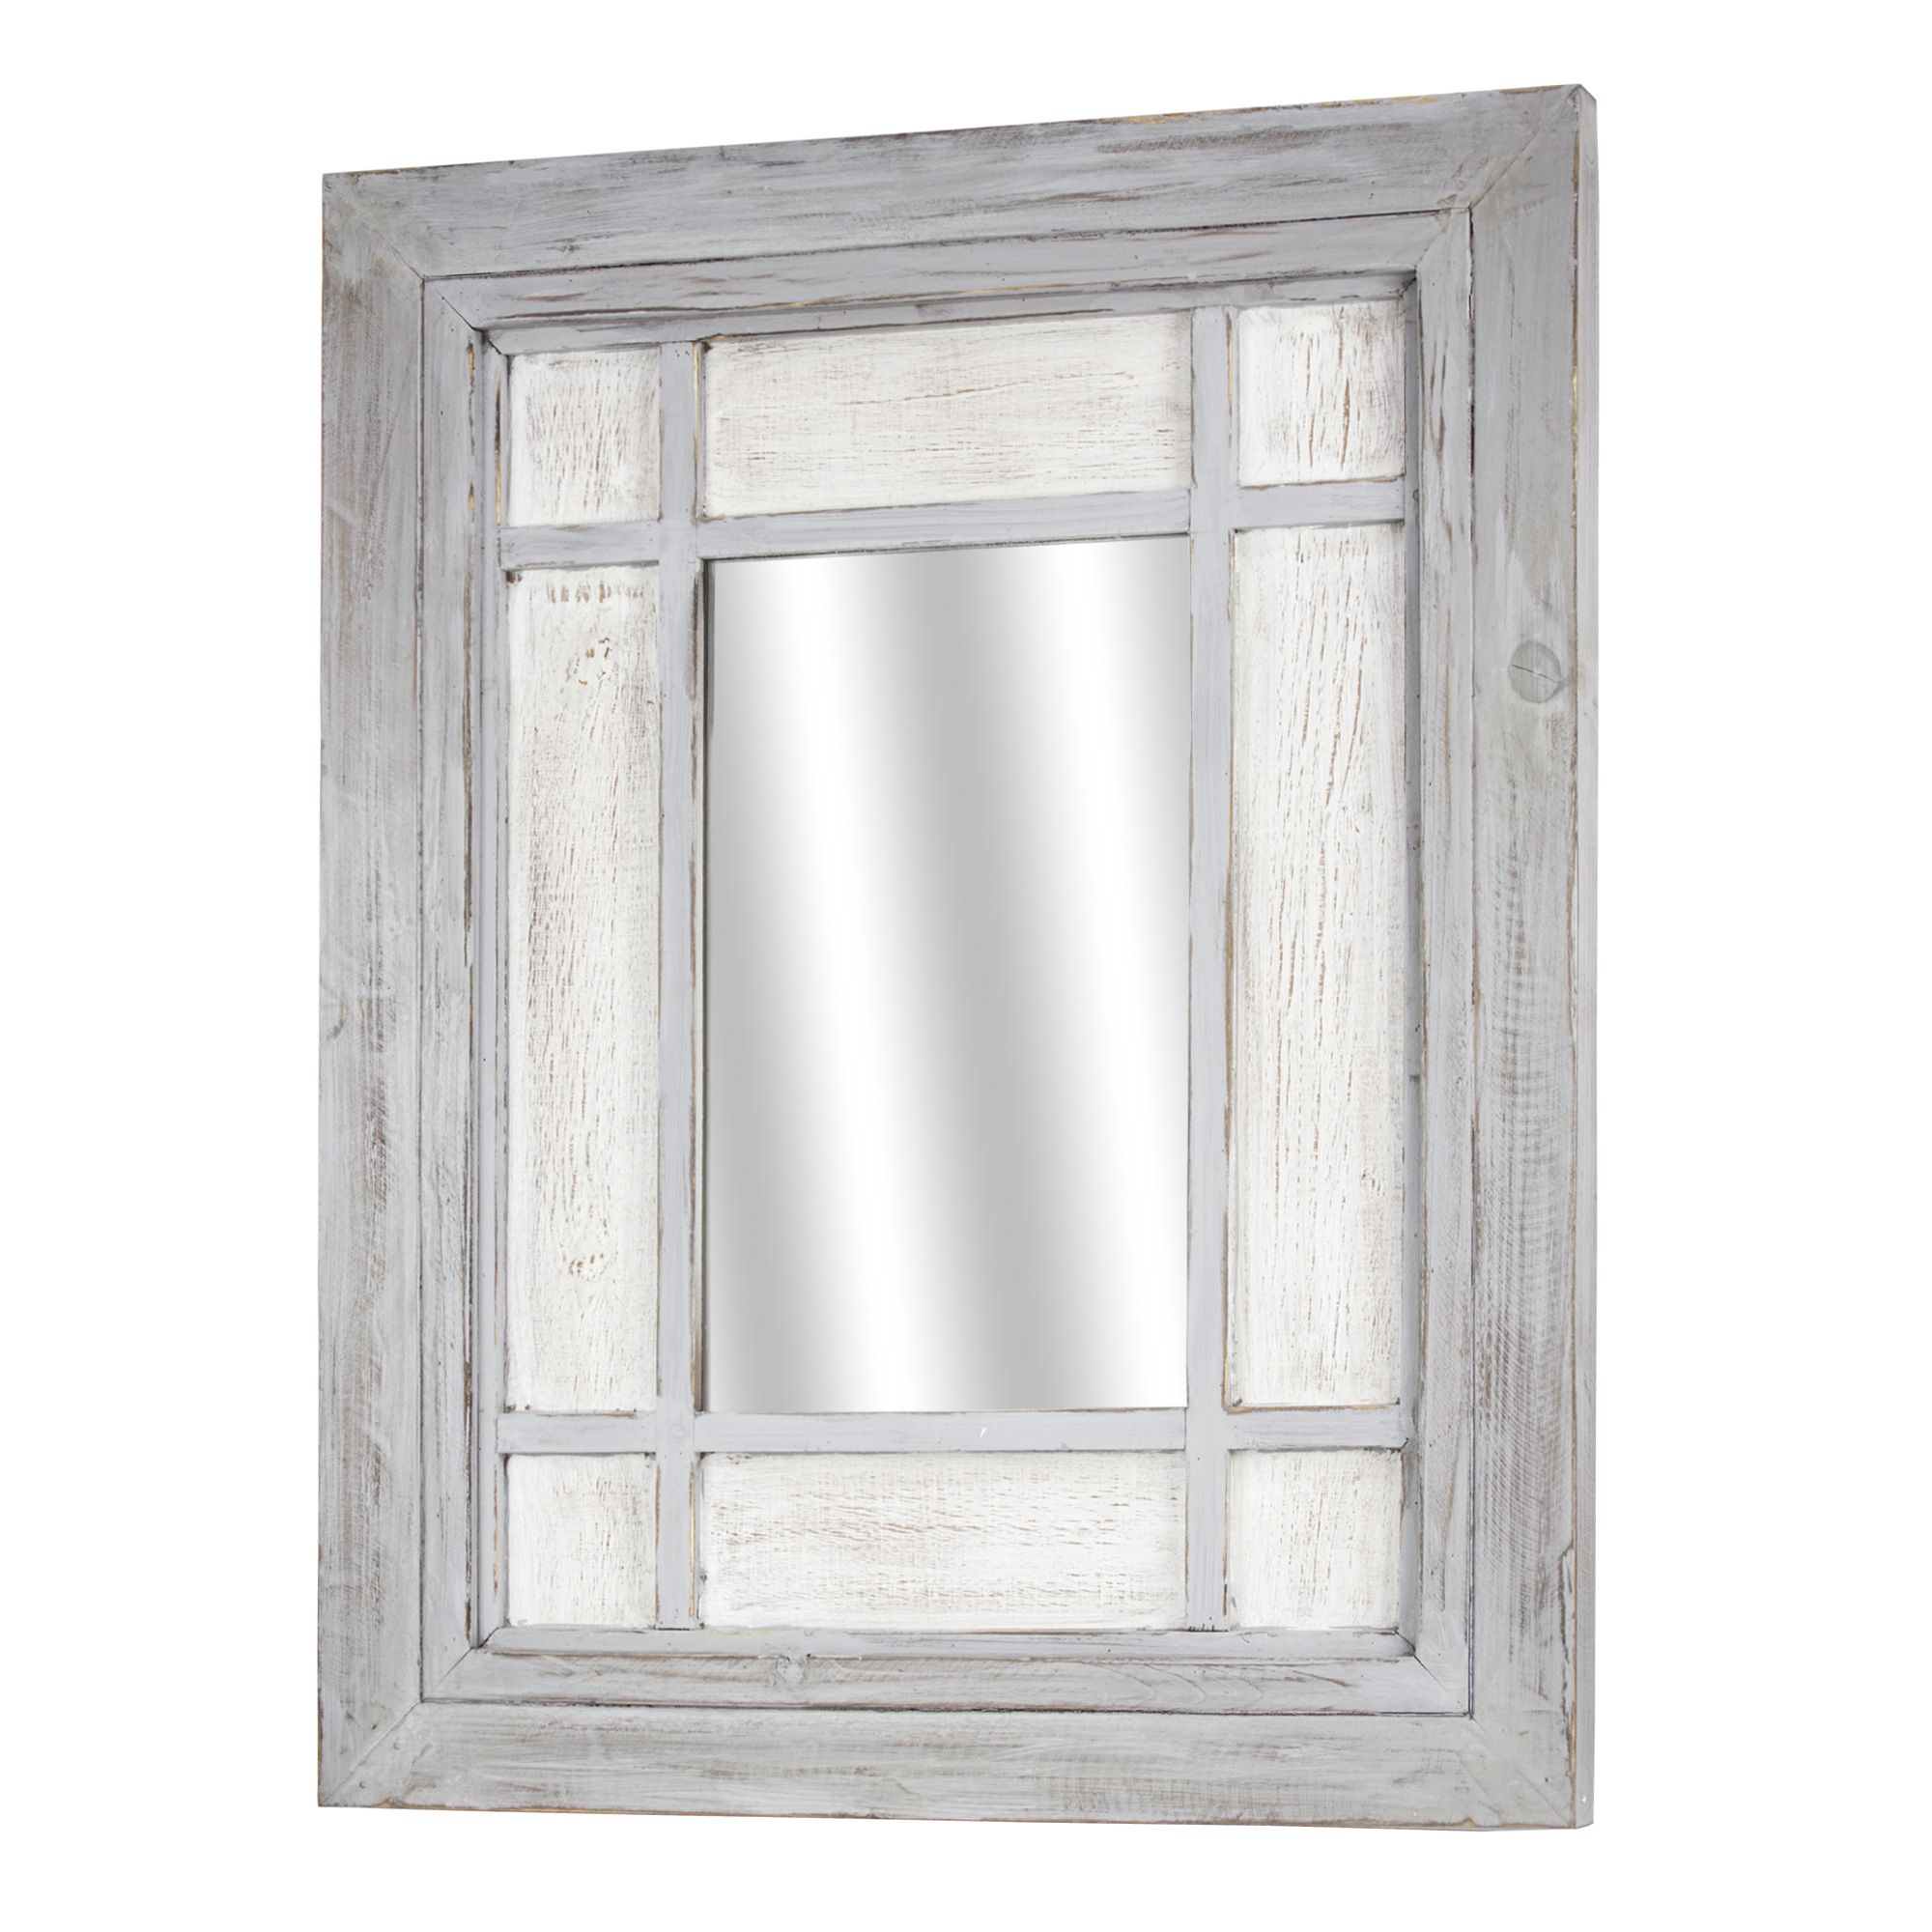 Rustic Wood Window Wall Mirror – Walmart – Walmart For Rustic Wood Wall Mirrors (View 4 of 15)